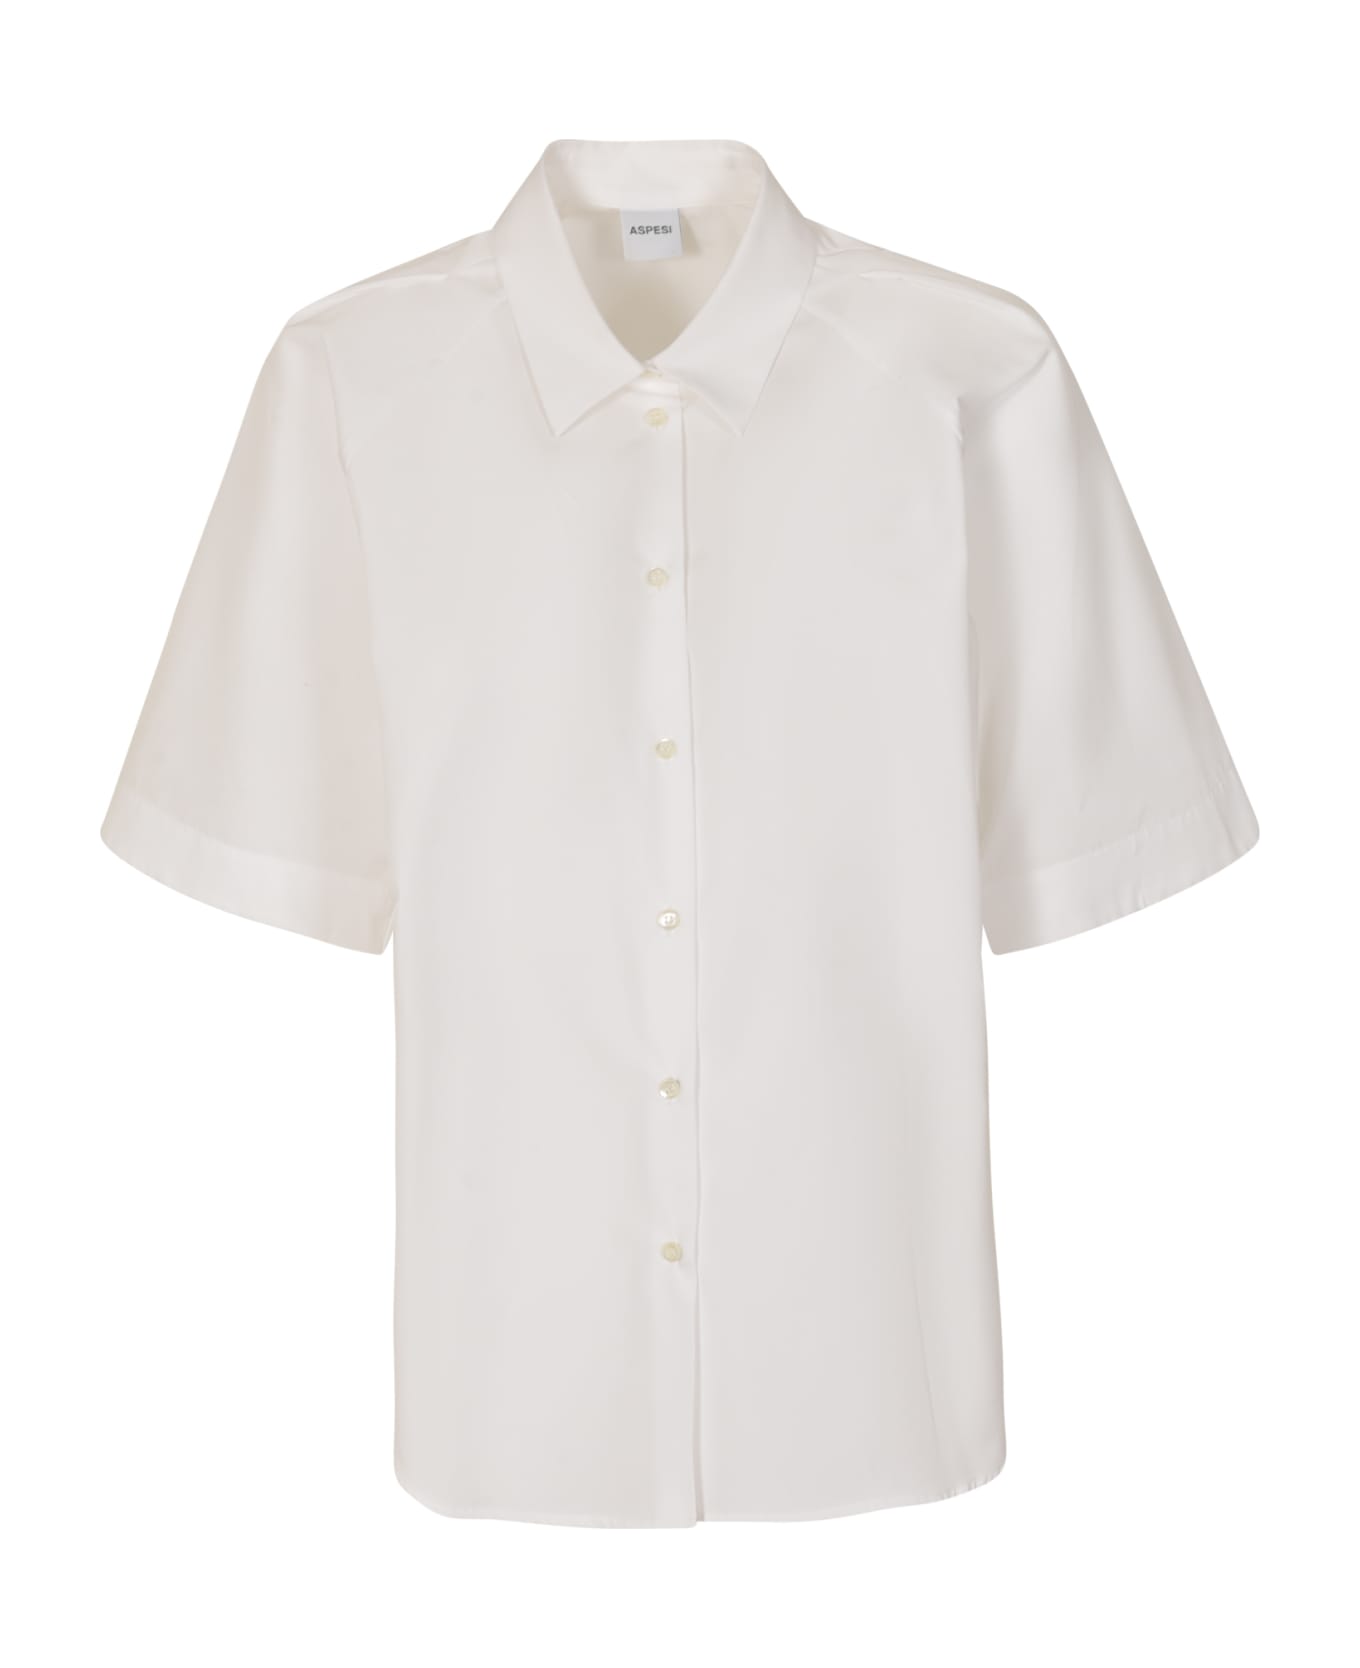 Aspesi Short-sleeved Plain Shirt - White シャツ